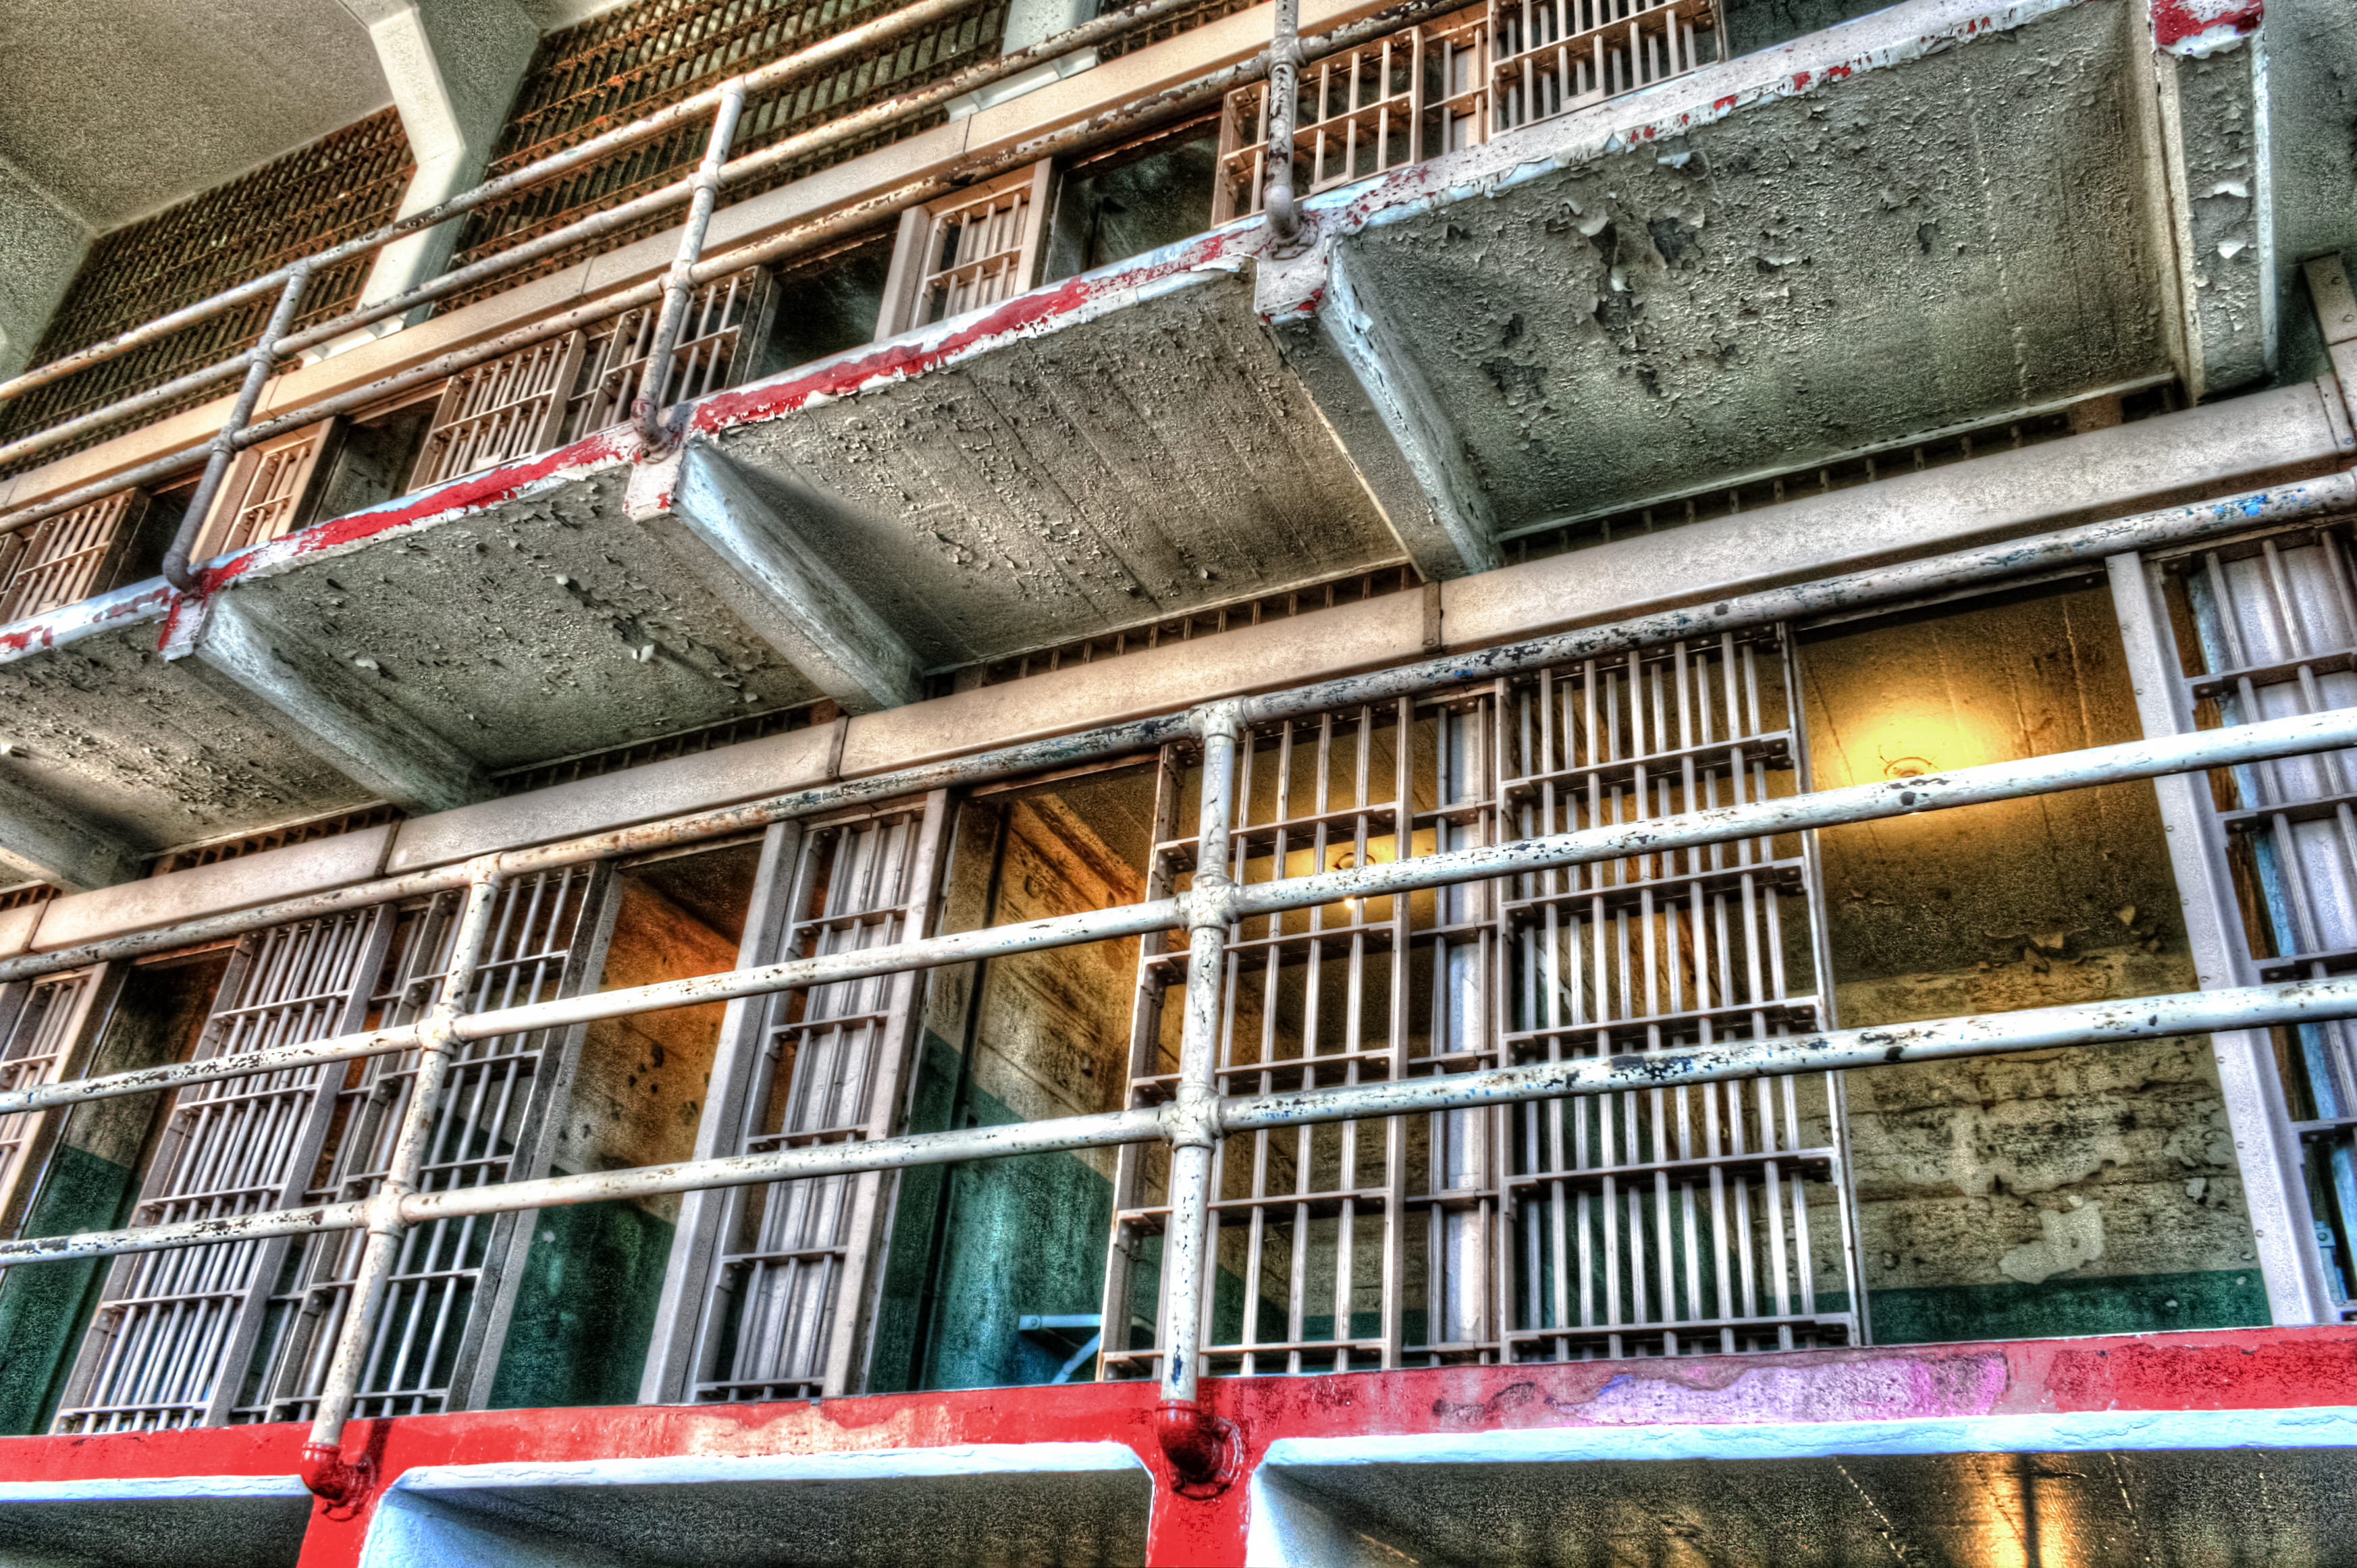 the inside of Alcatraz